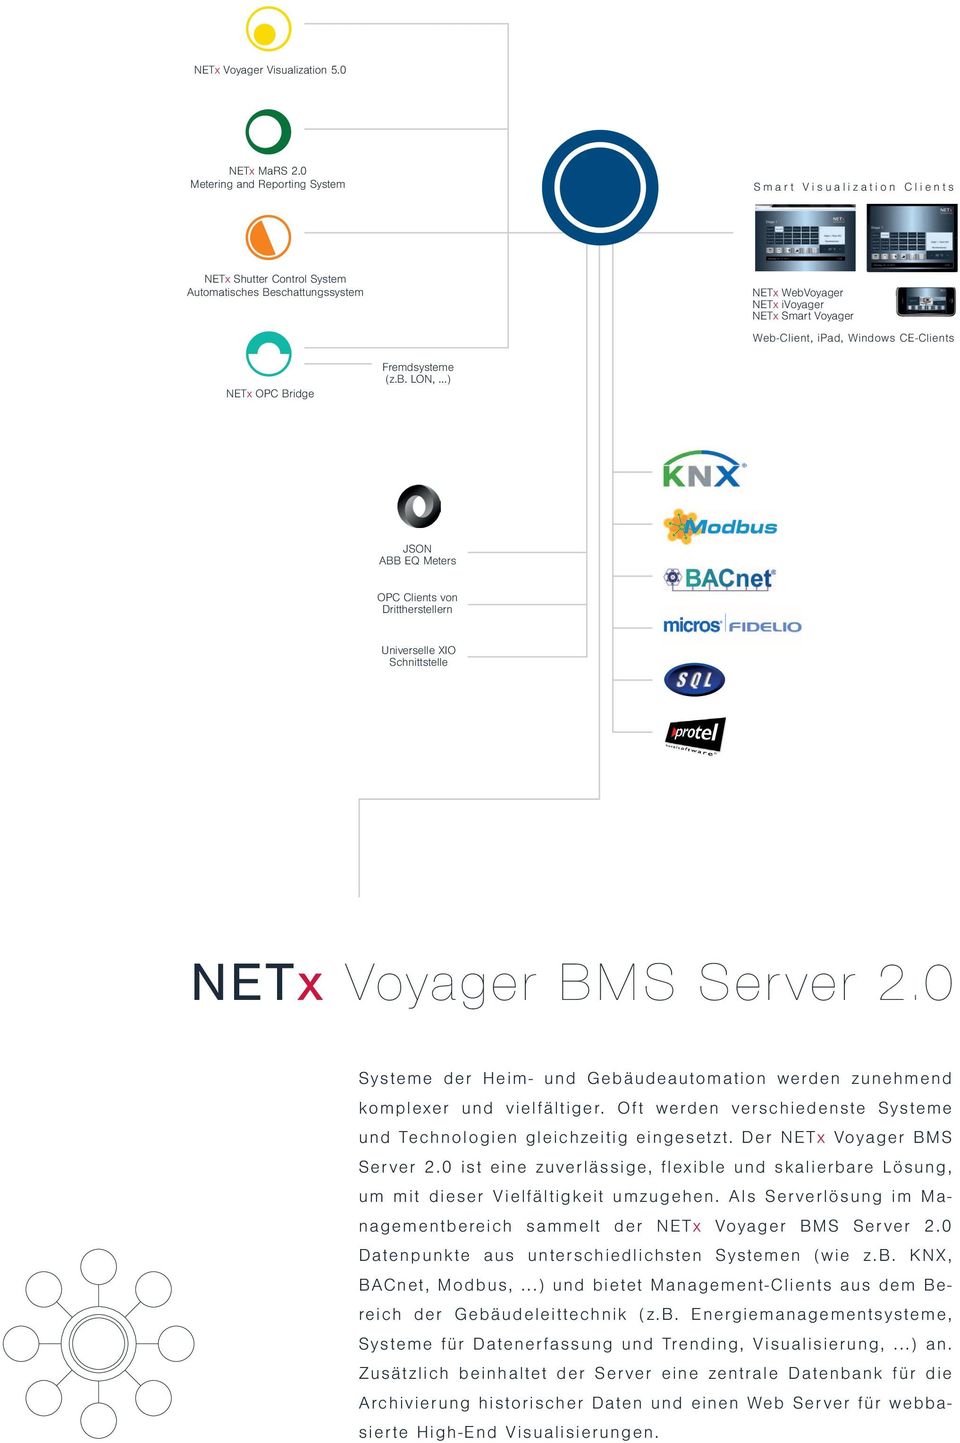 CE-Clients NETx OPC Bridge Fremdsysteme (z.b. LON,...) JSON ABB EQ Meters OPC Clients von Drittherstellern Universelle XIO Schnittstelle NETx Voyager BMS Server 2.